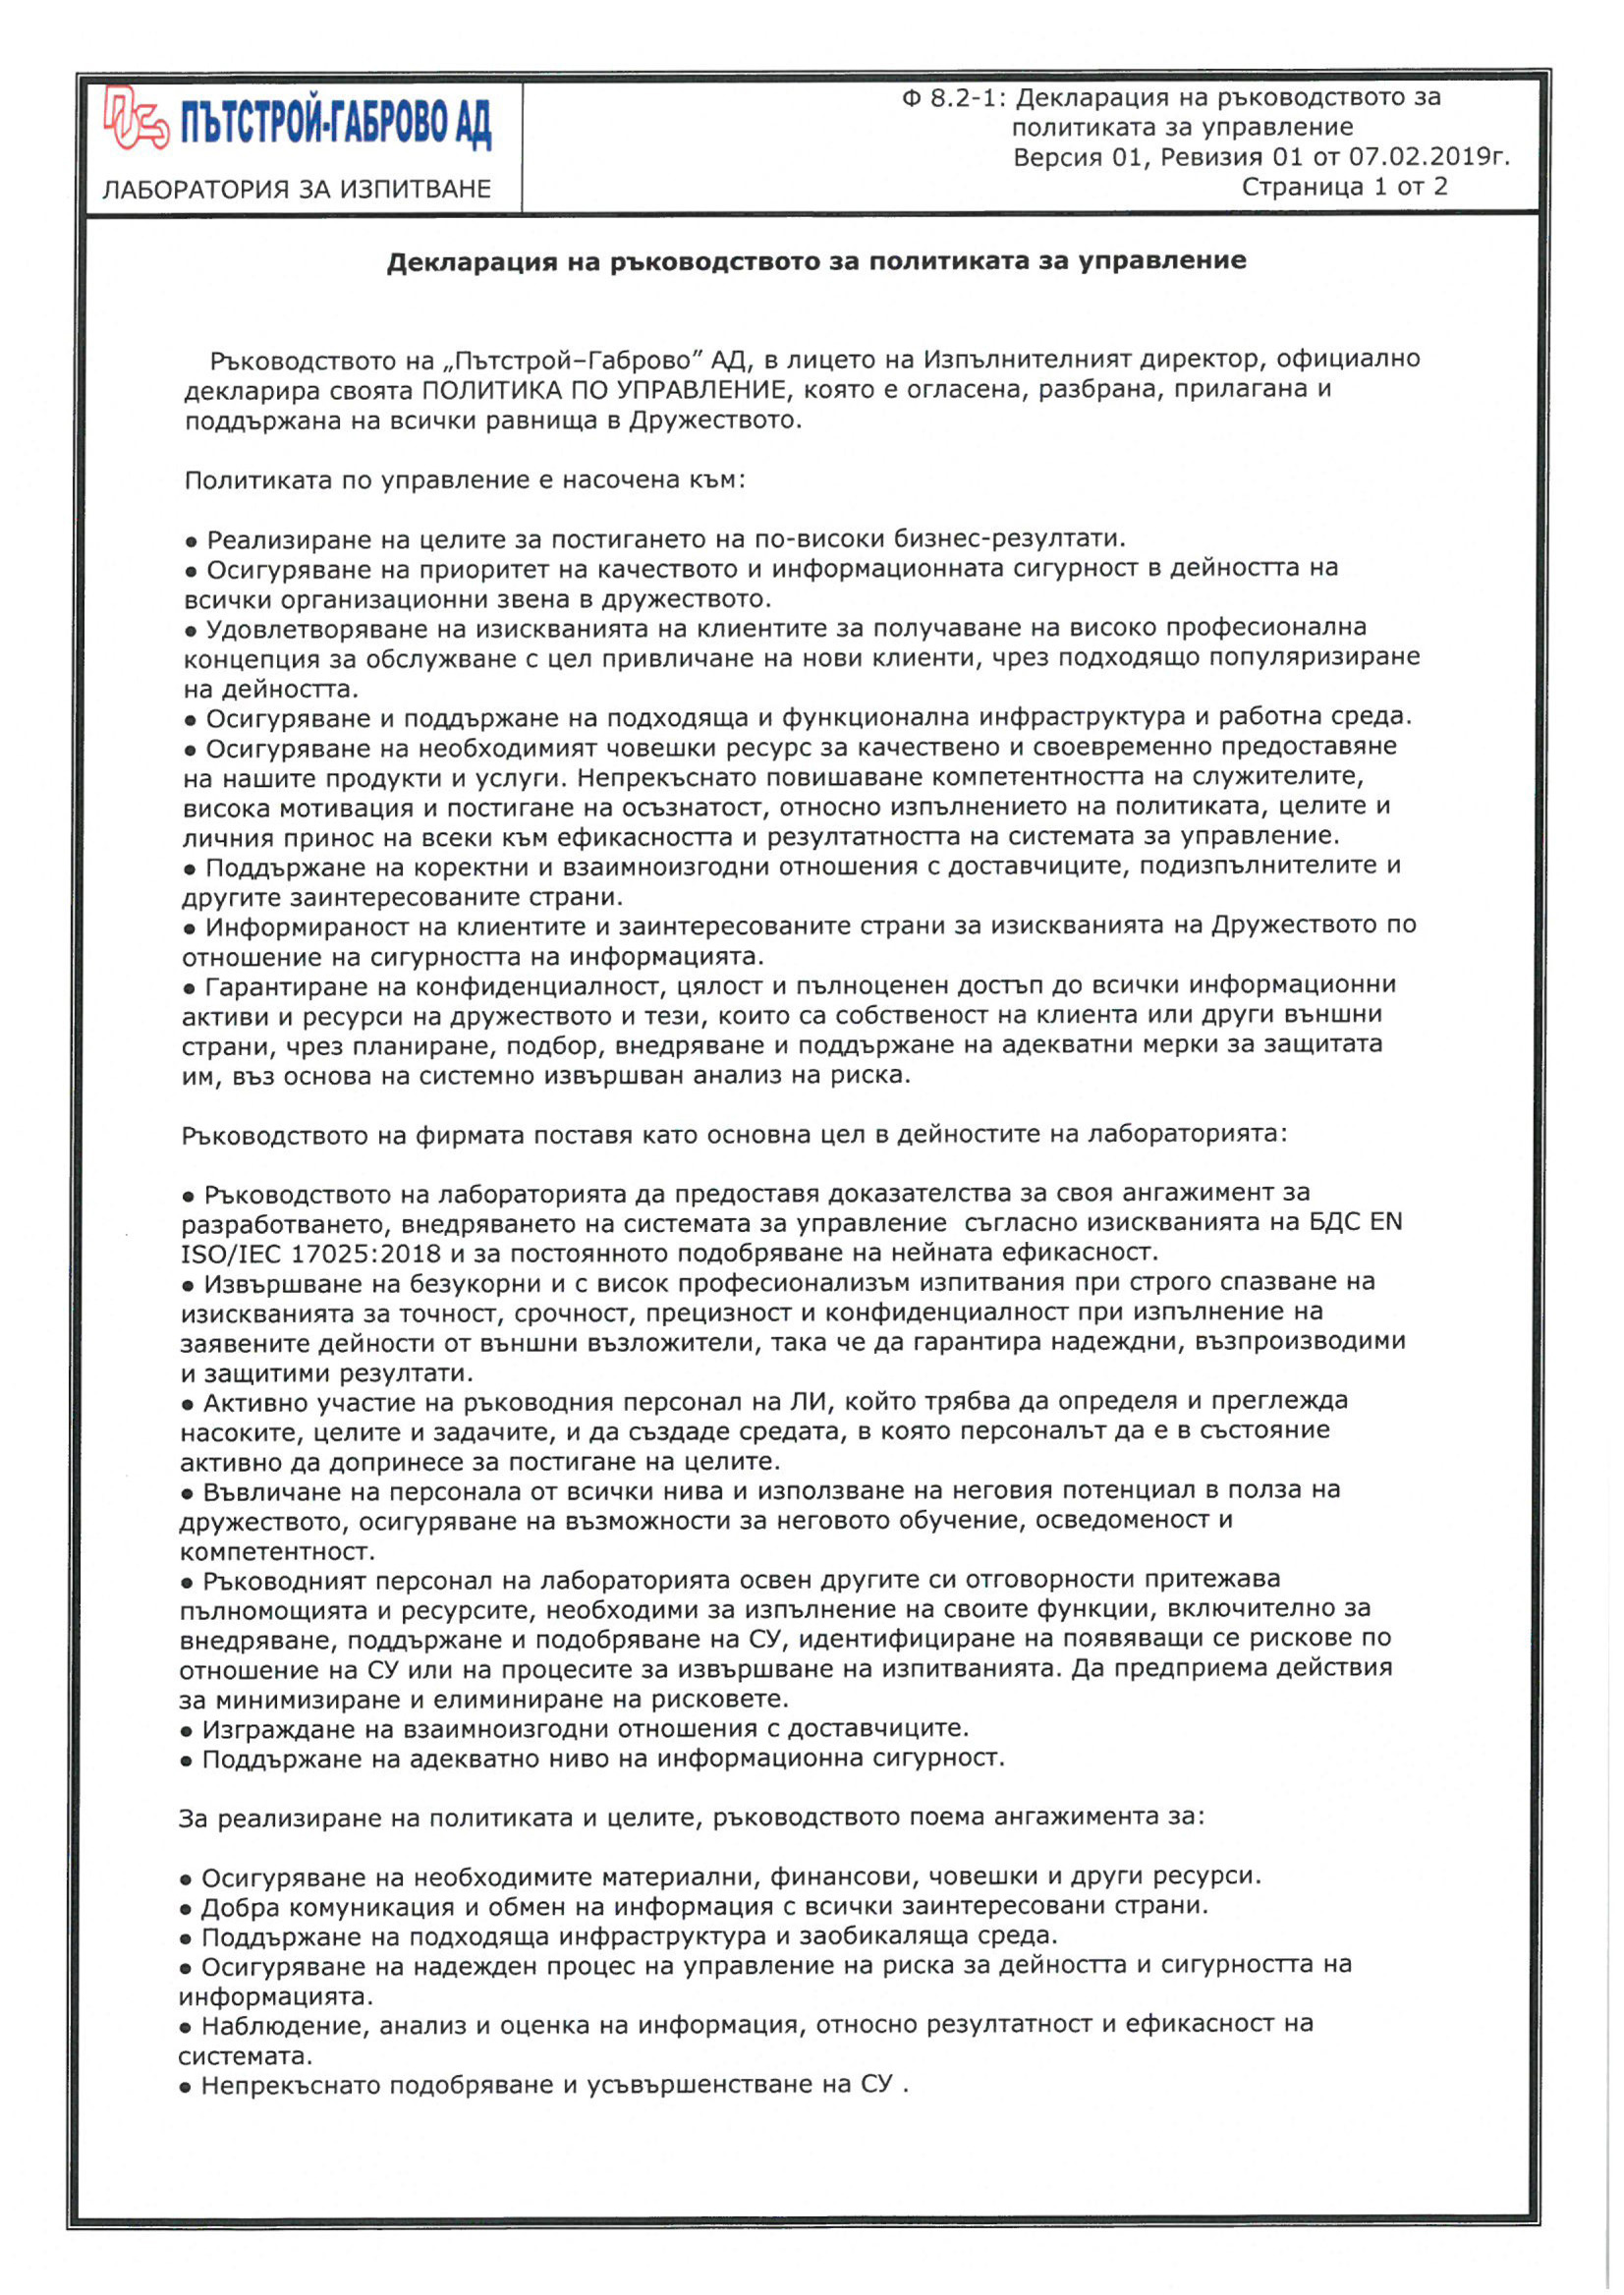 Декларация на ръководството за политика на управление.